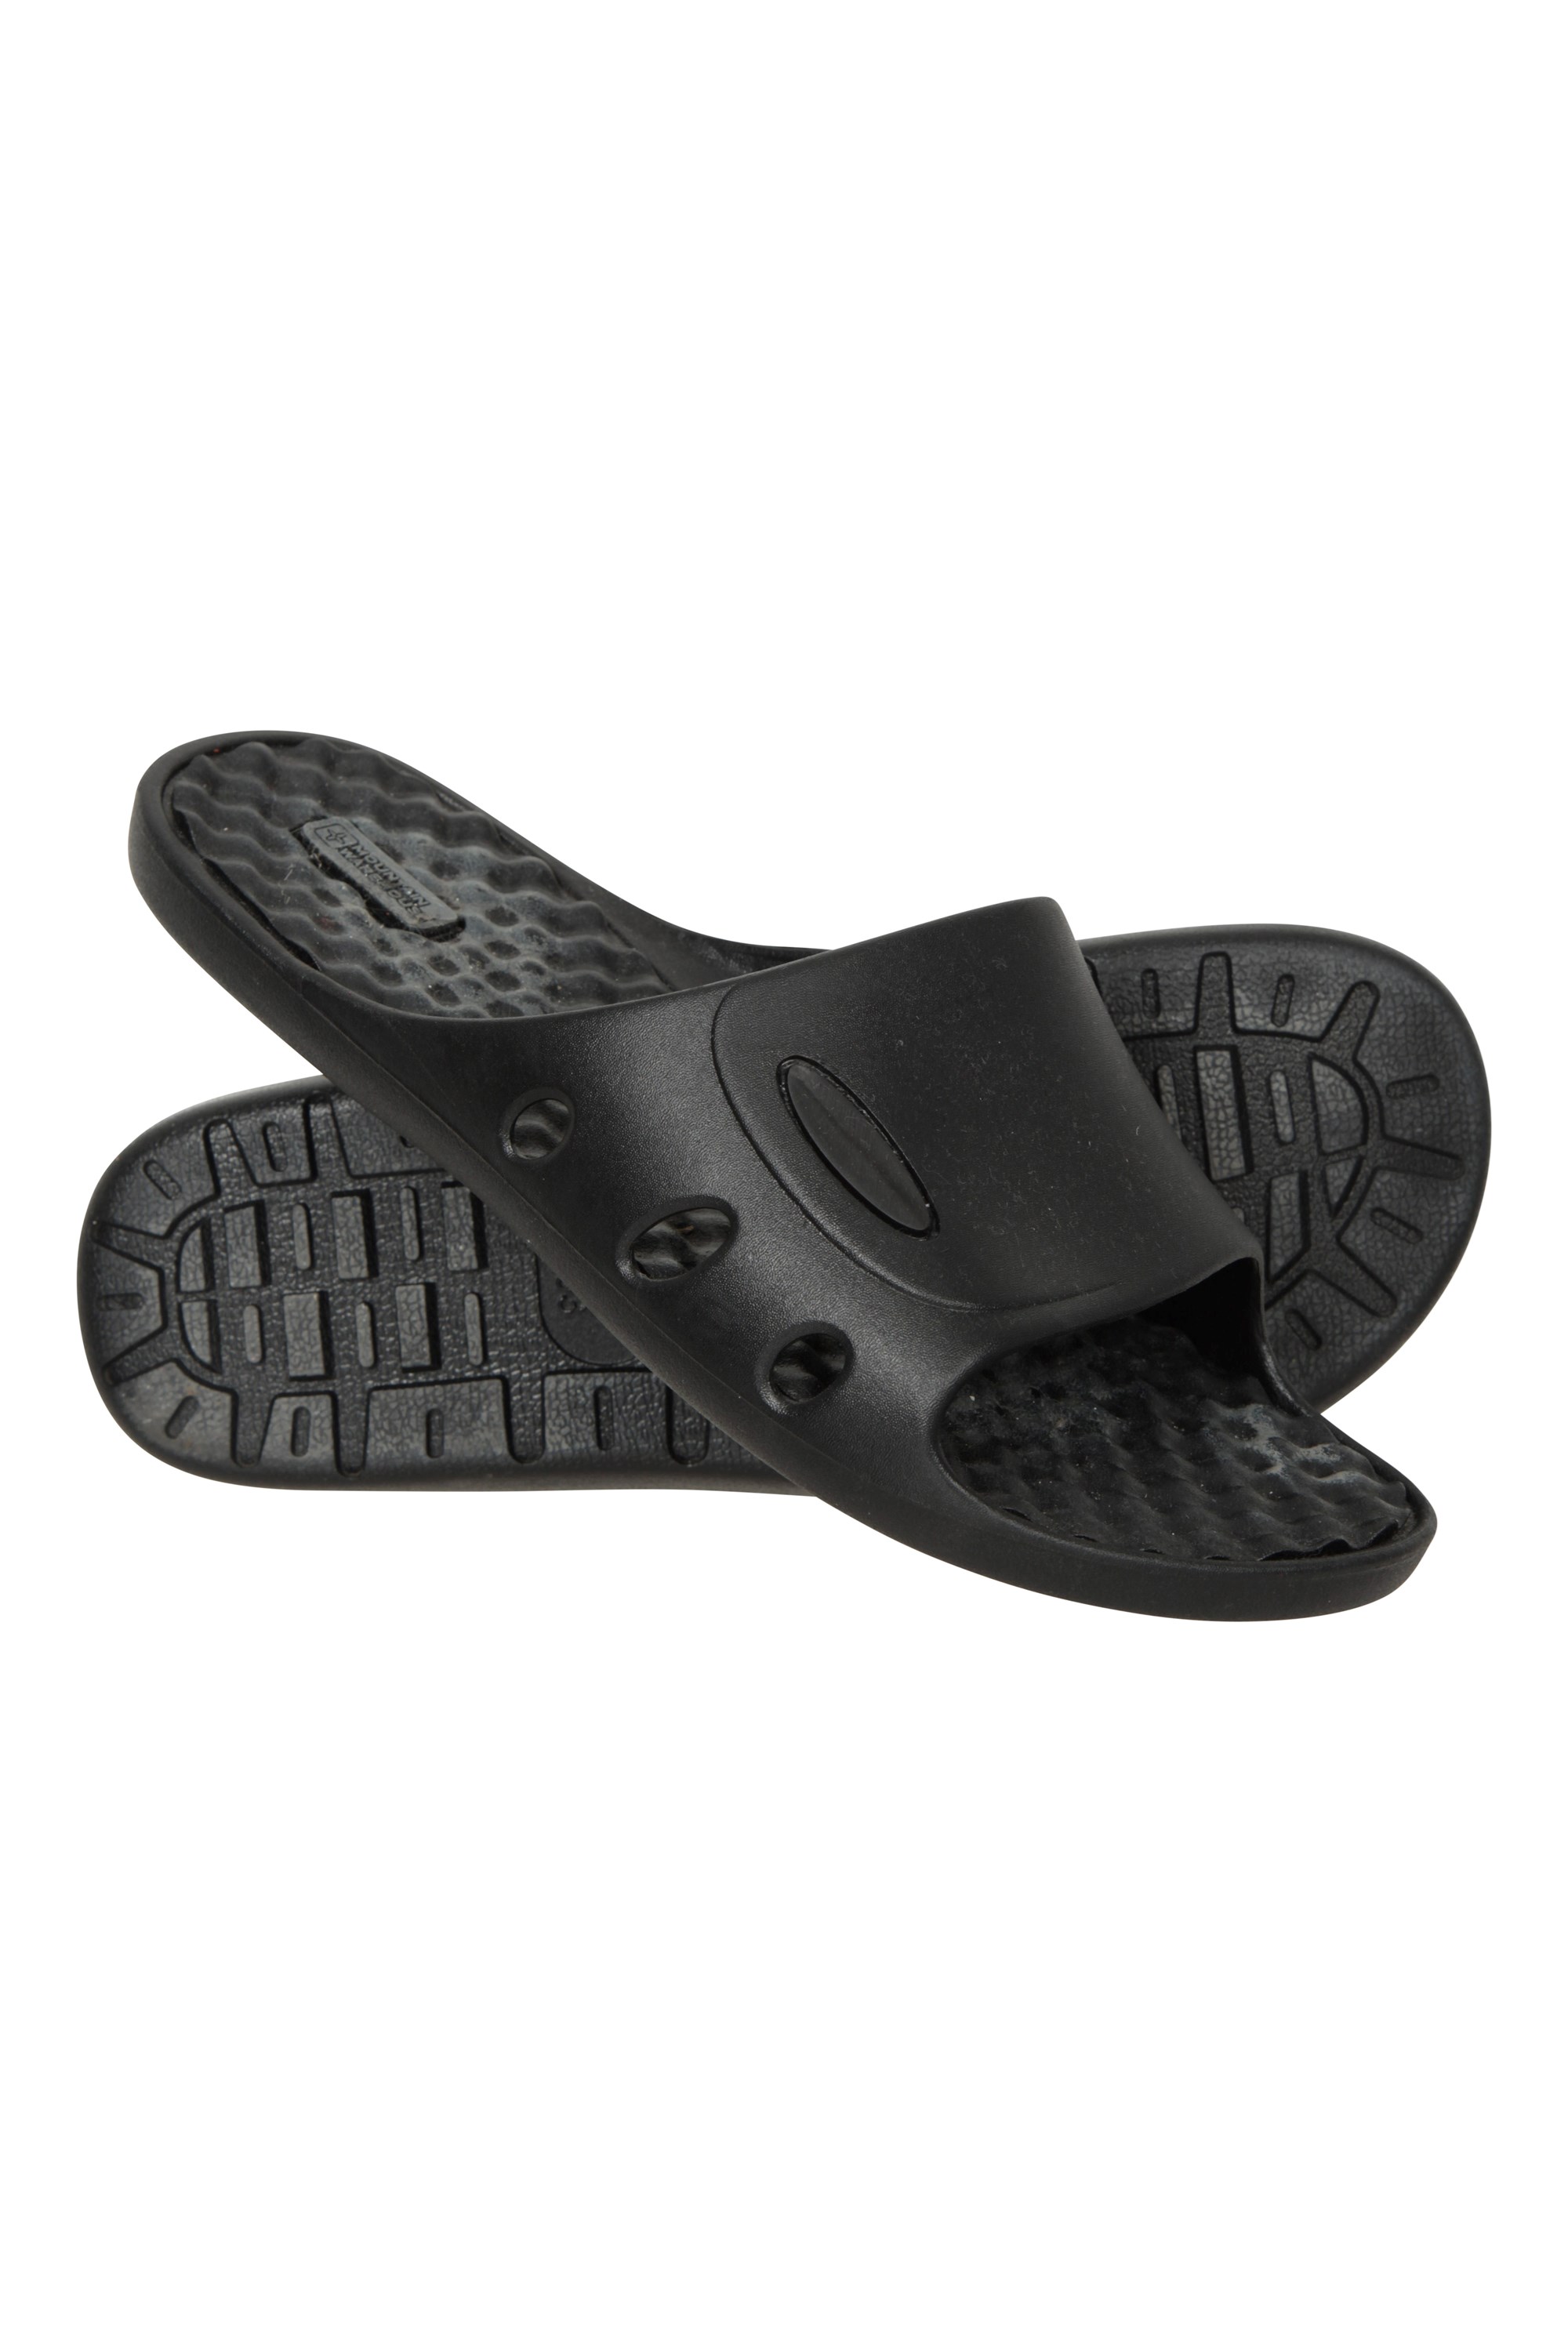 Street Scuff Mens Sandals - Black